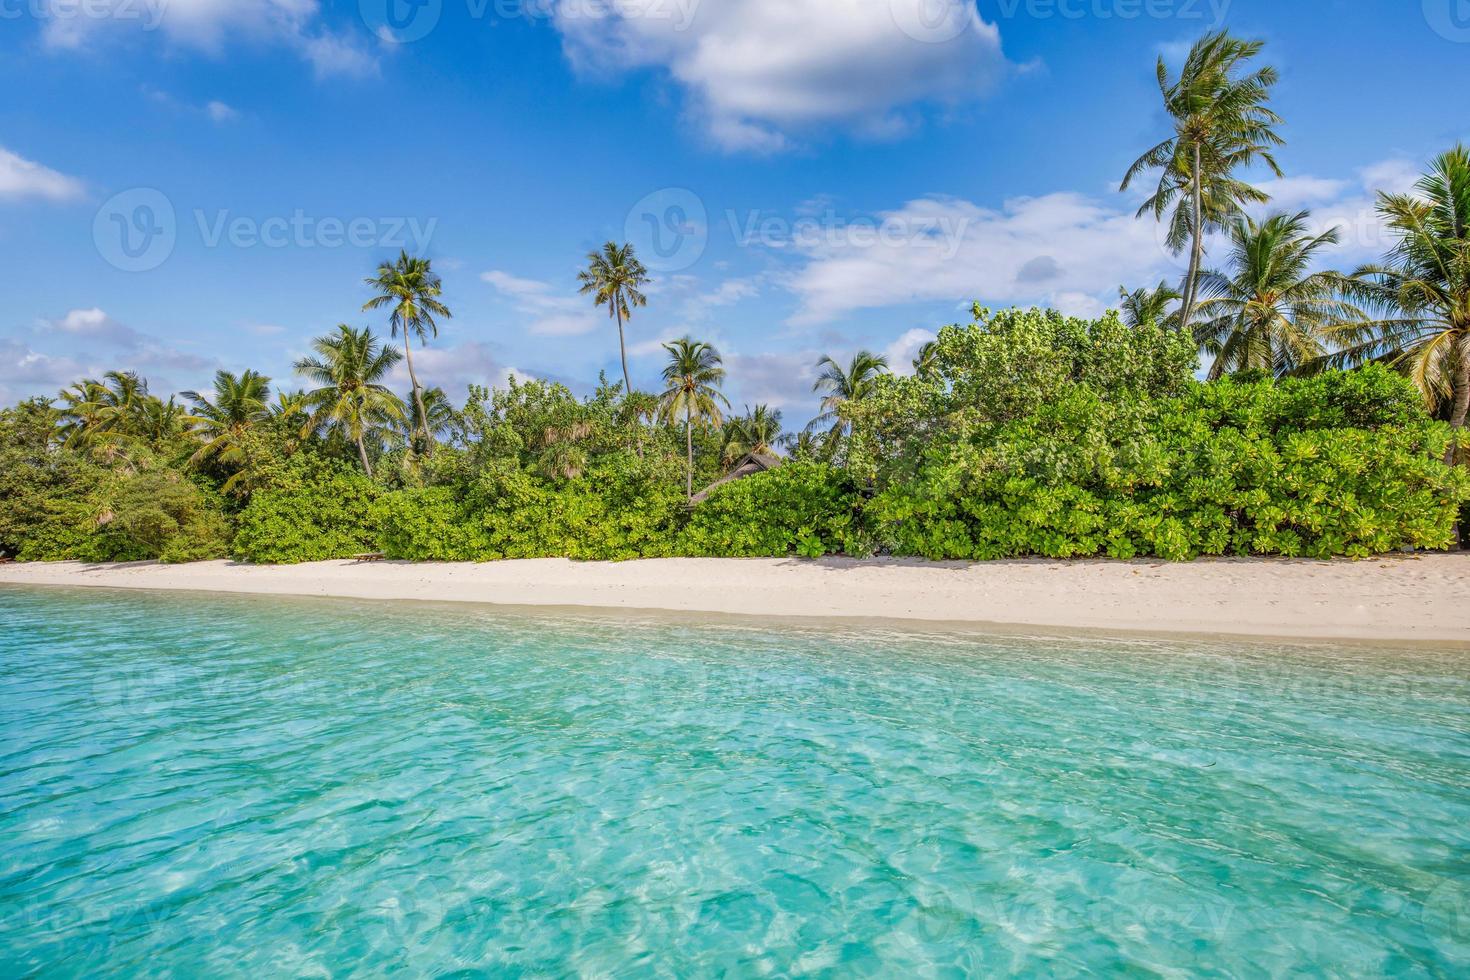 playa tropical del océano de las islas maldivas. laguna marina exótica, palmeras sobre arena blanca. paisaje idílico de la naturaleza. increíble costa escénica de playa, brillante sol de verano tropical y cielo azul con nubes claras foto